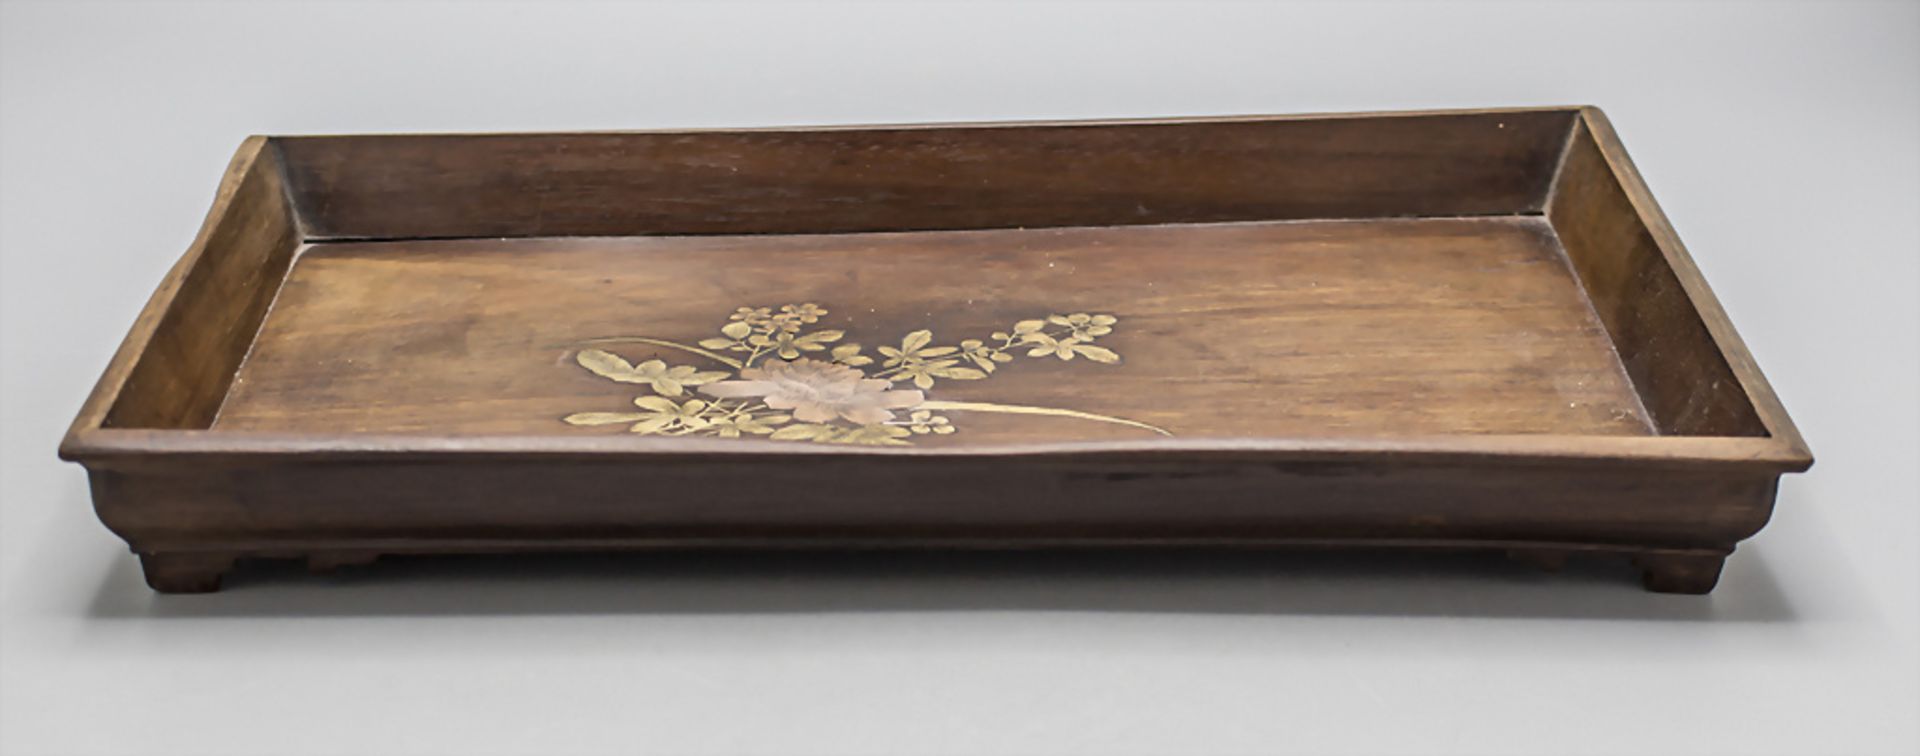 Holztablett auf vier Füßen mit Floraldekor / A footed wooden tray with floral inlays, ... - Bild 2 aus 6